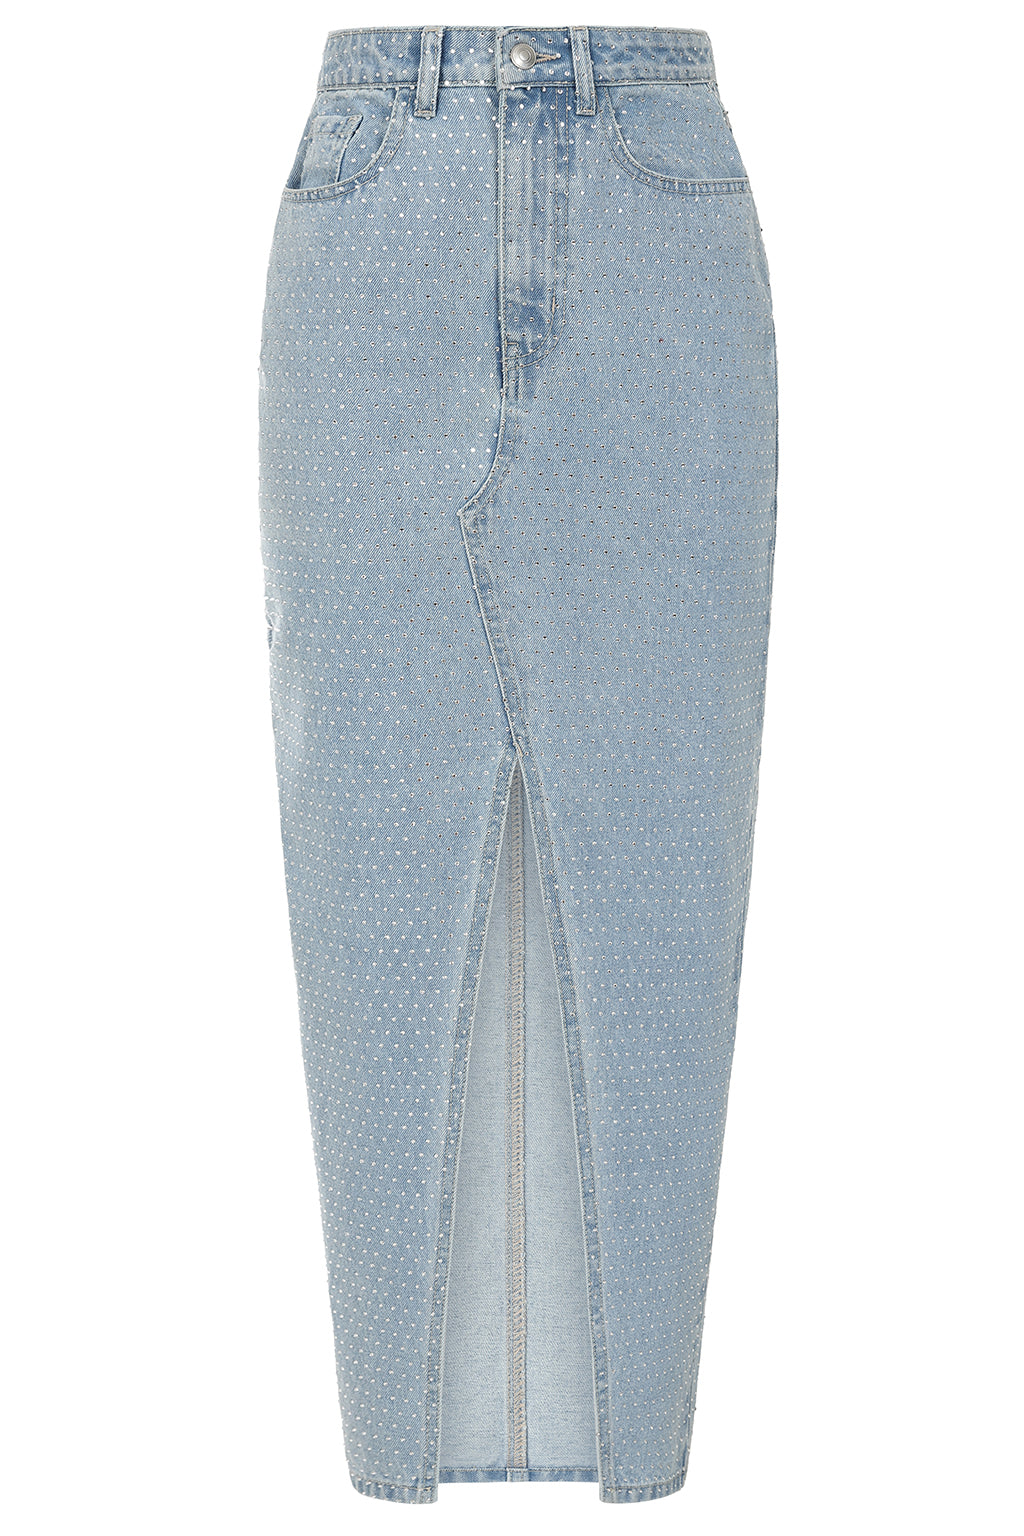 HARPER Crystal Embellished Denim Maxi Skirt in Light Blue